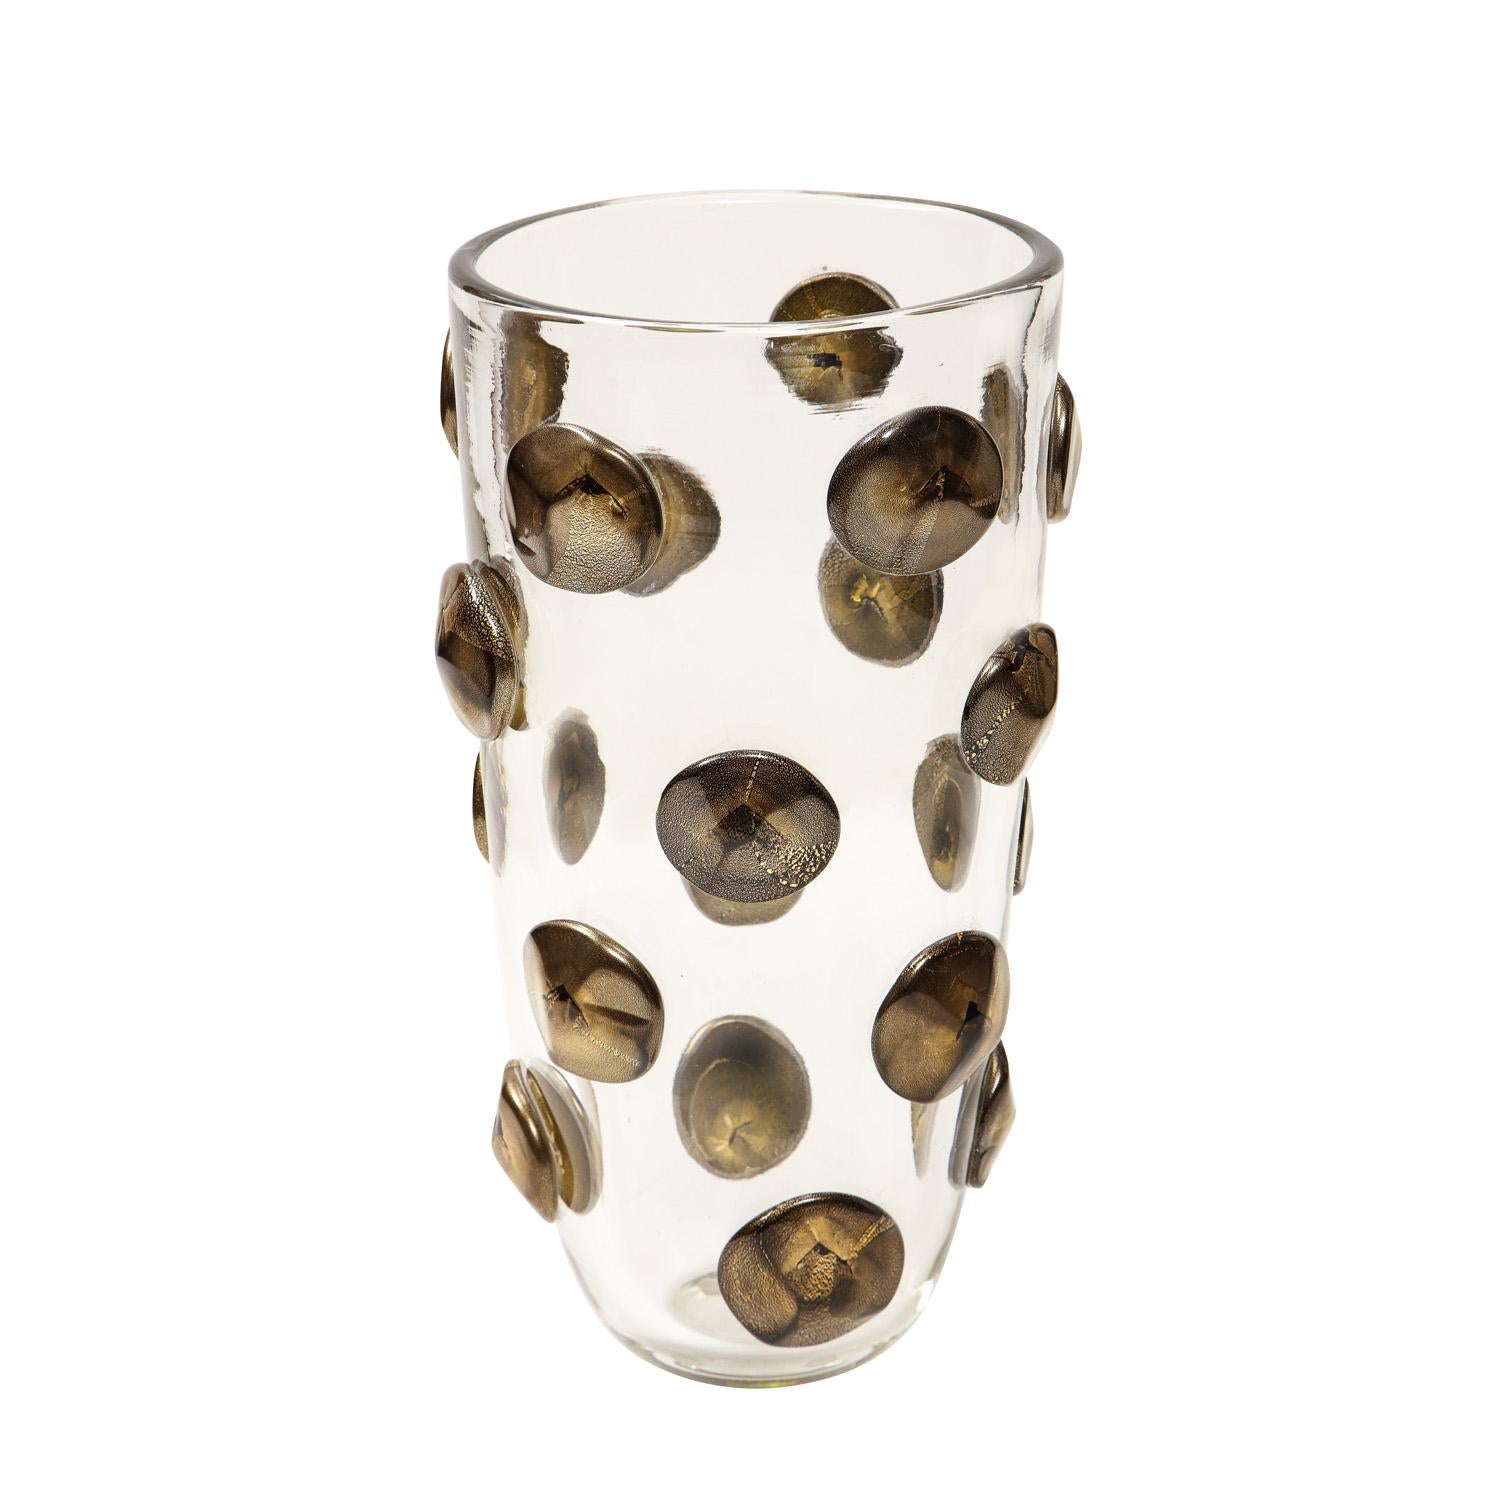 Exquis vase en verre de Murano transparent soufflé à la main, avec un motif de points en verre noir et or en relief. Italie 2022. Il y en a deux actuellement disponibles.